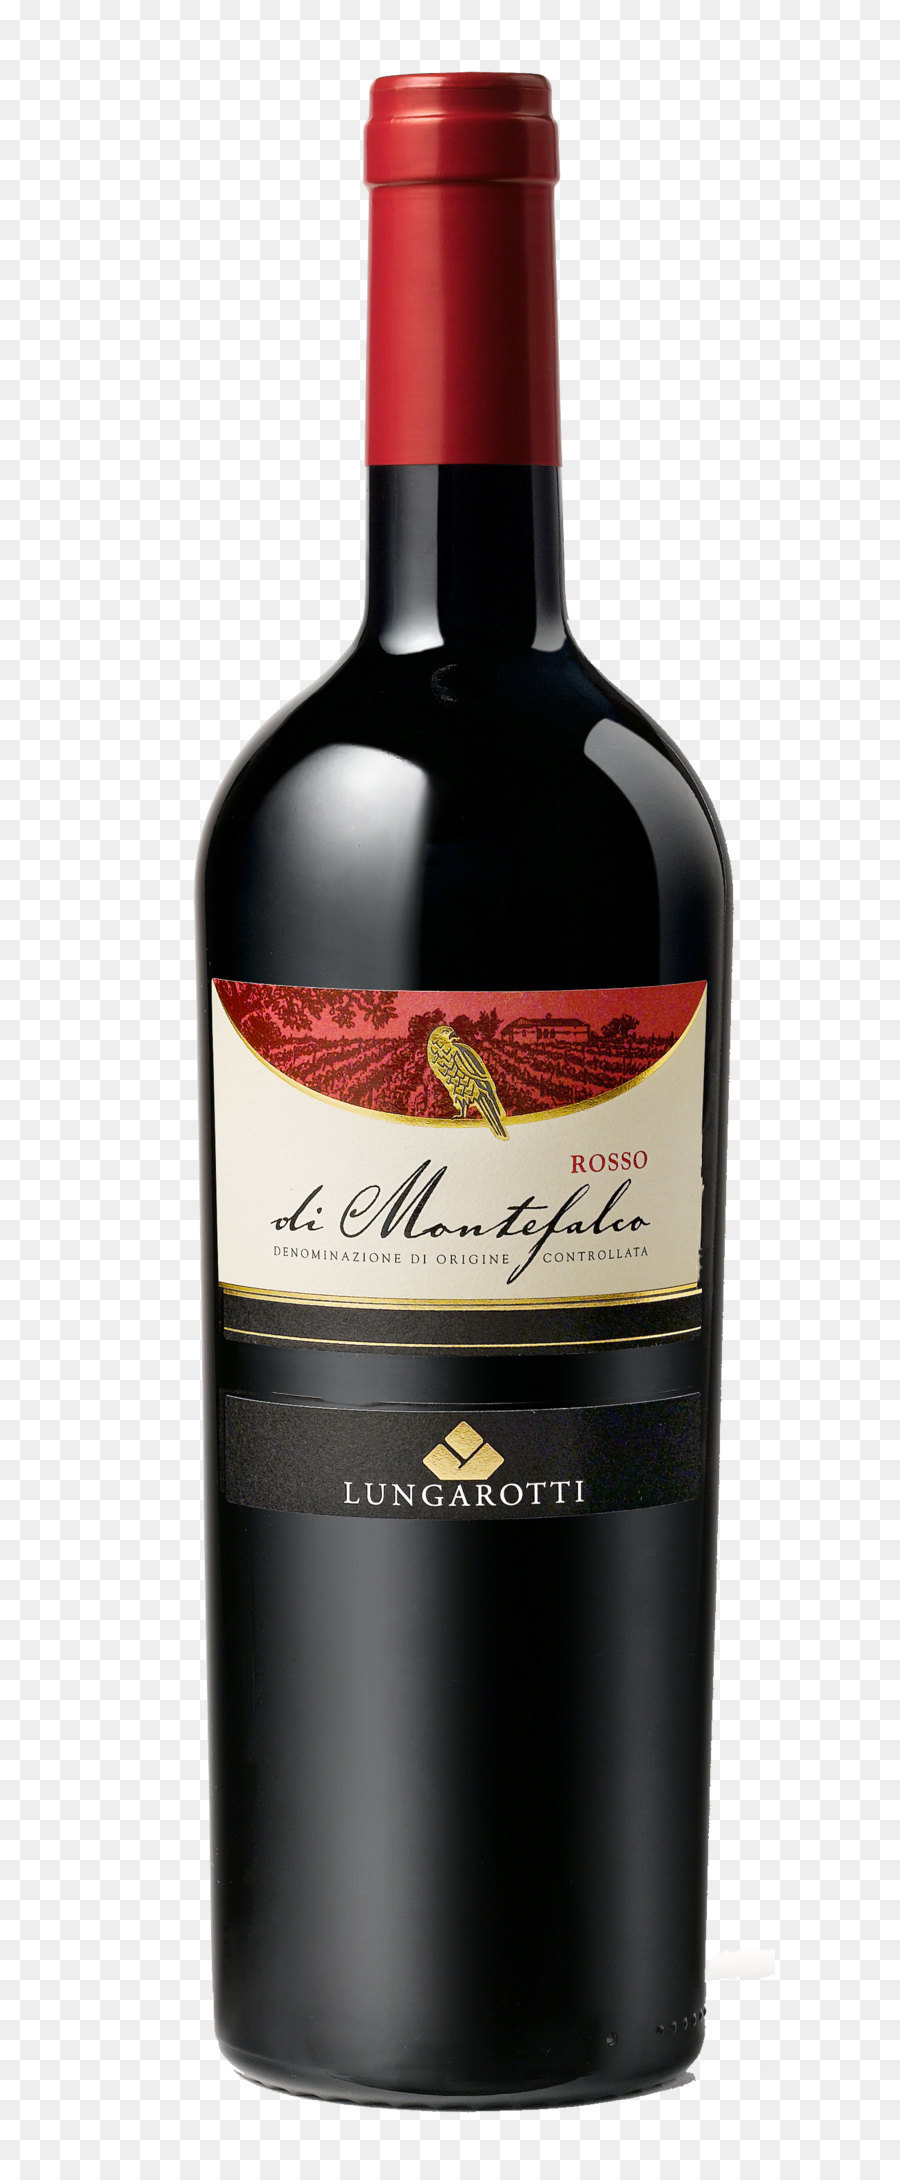 Red Wine Dessert wine Liqueur Glass bottle - Wine bottle PNG image png download - 944*3137 - Free Transparent Red Wine png Download.